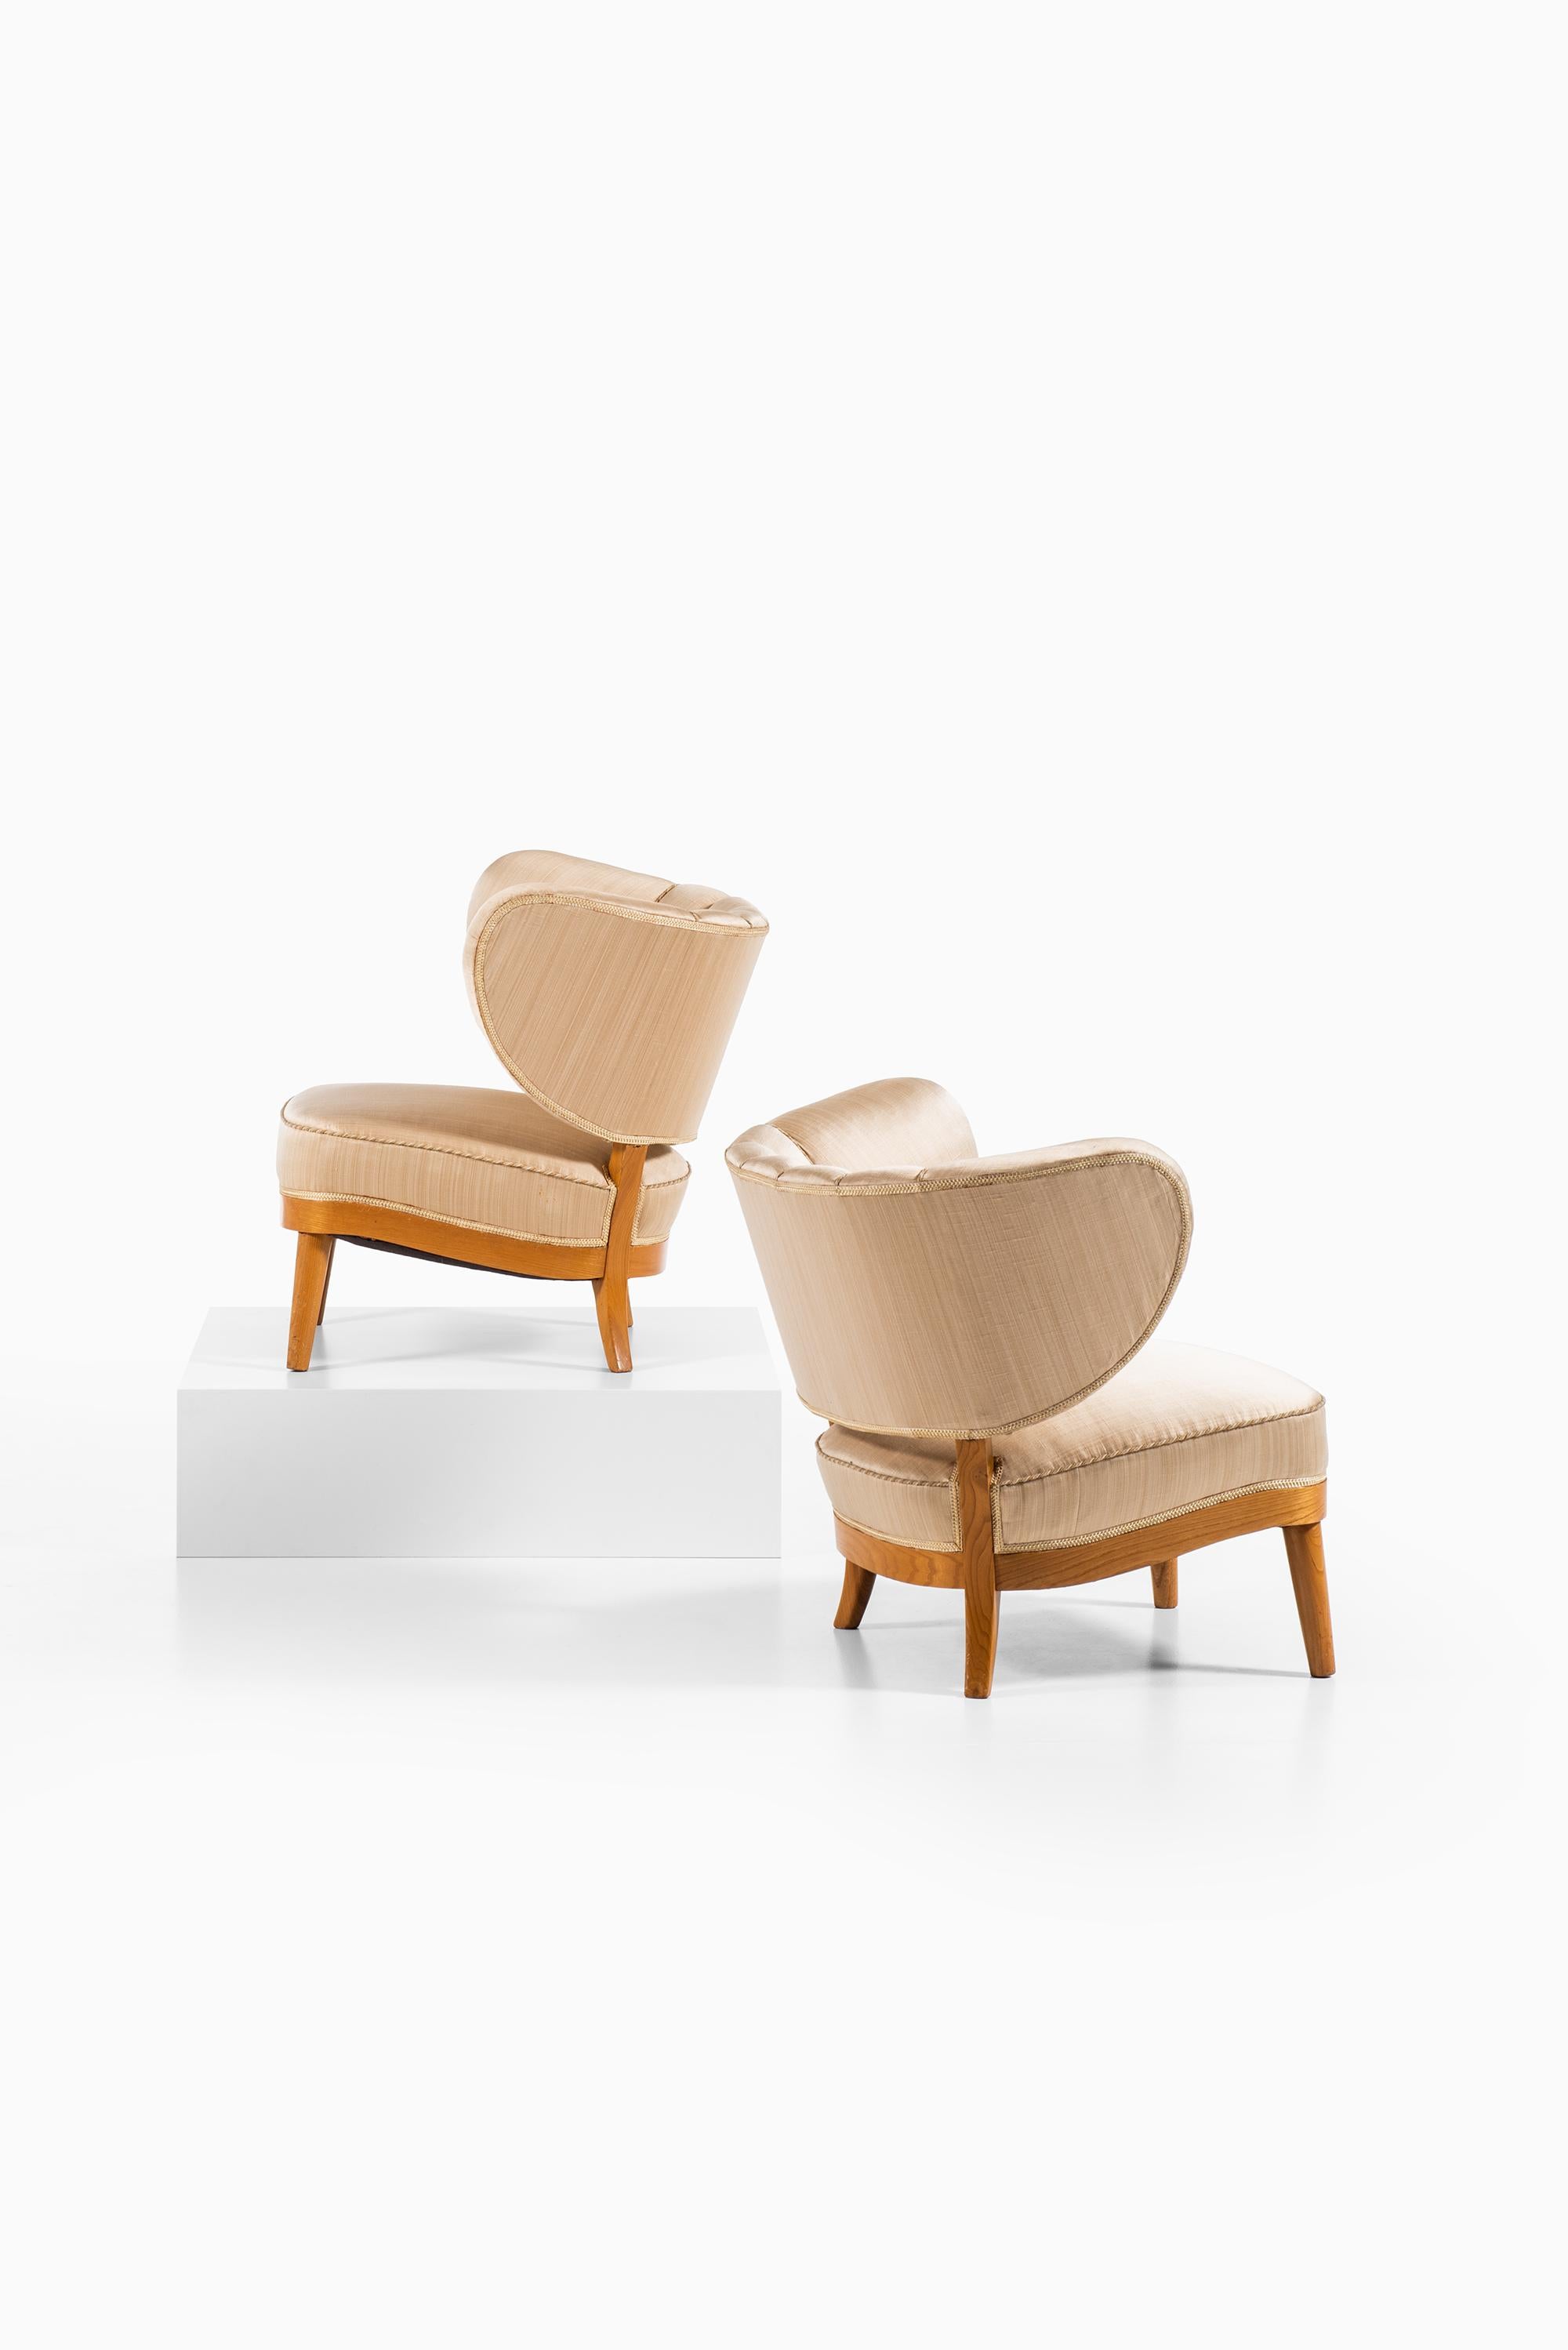 Otto Schulz Easy Chairs Produziert von Boet in Schweden (Skandinavische Moderne)